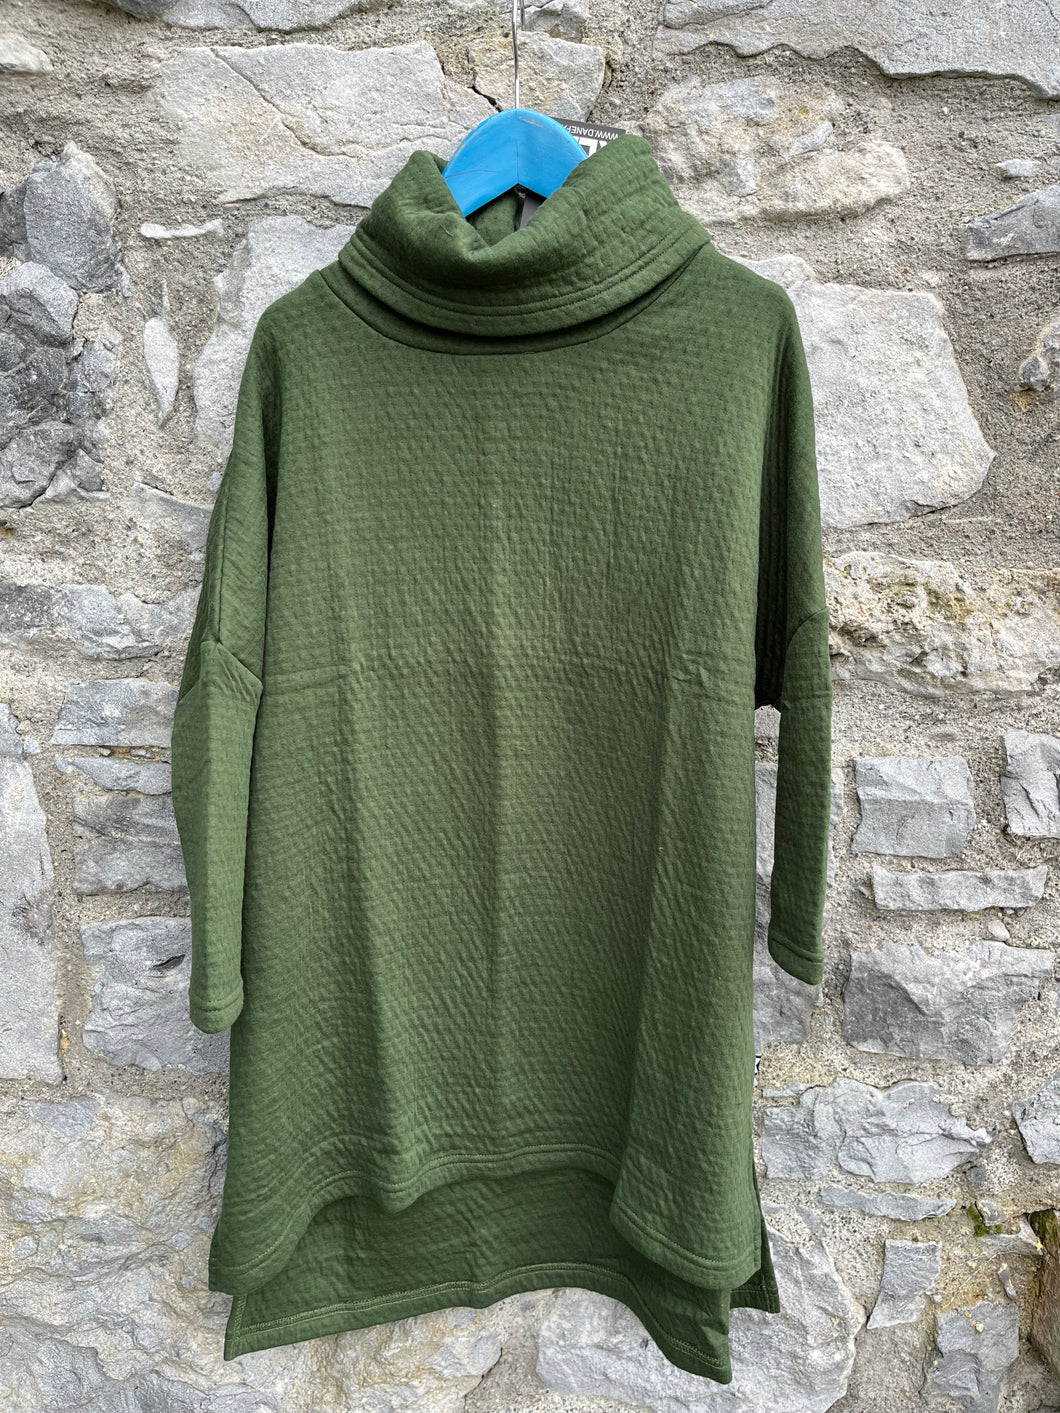 Green tunic   9y (134cm)